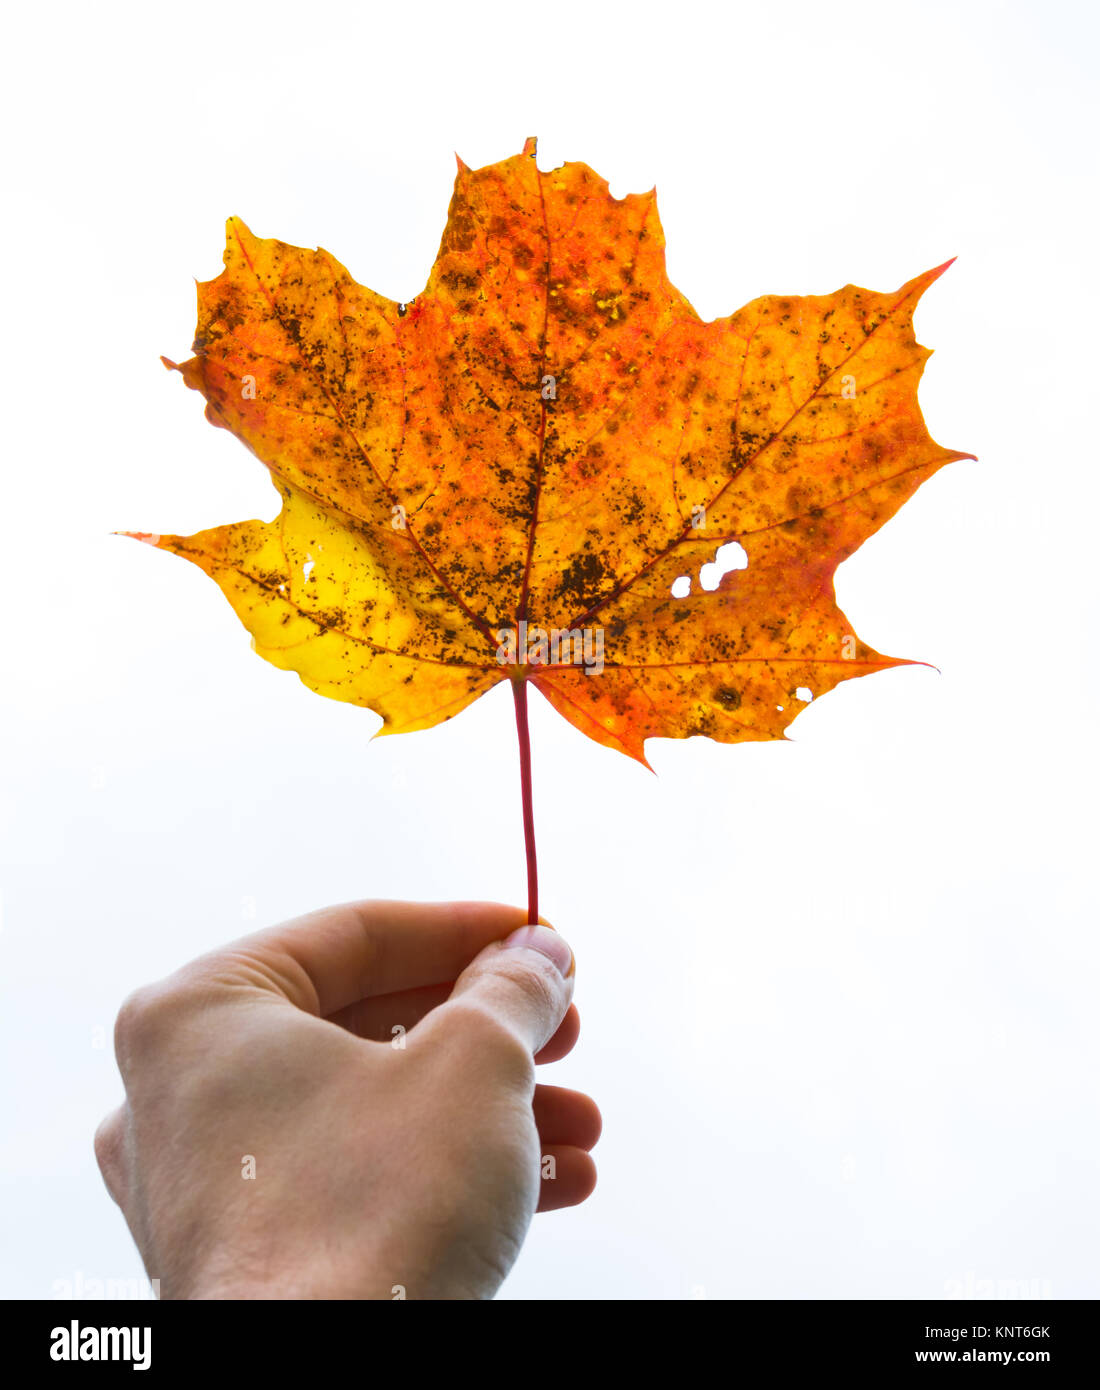 Dita della mano tenuta stelo delicato rosso arancio giallo morto a foglia di quercia autunno cadono impianto stagionale morto ad albero isolato Sfondo bianco Foto Stock